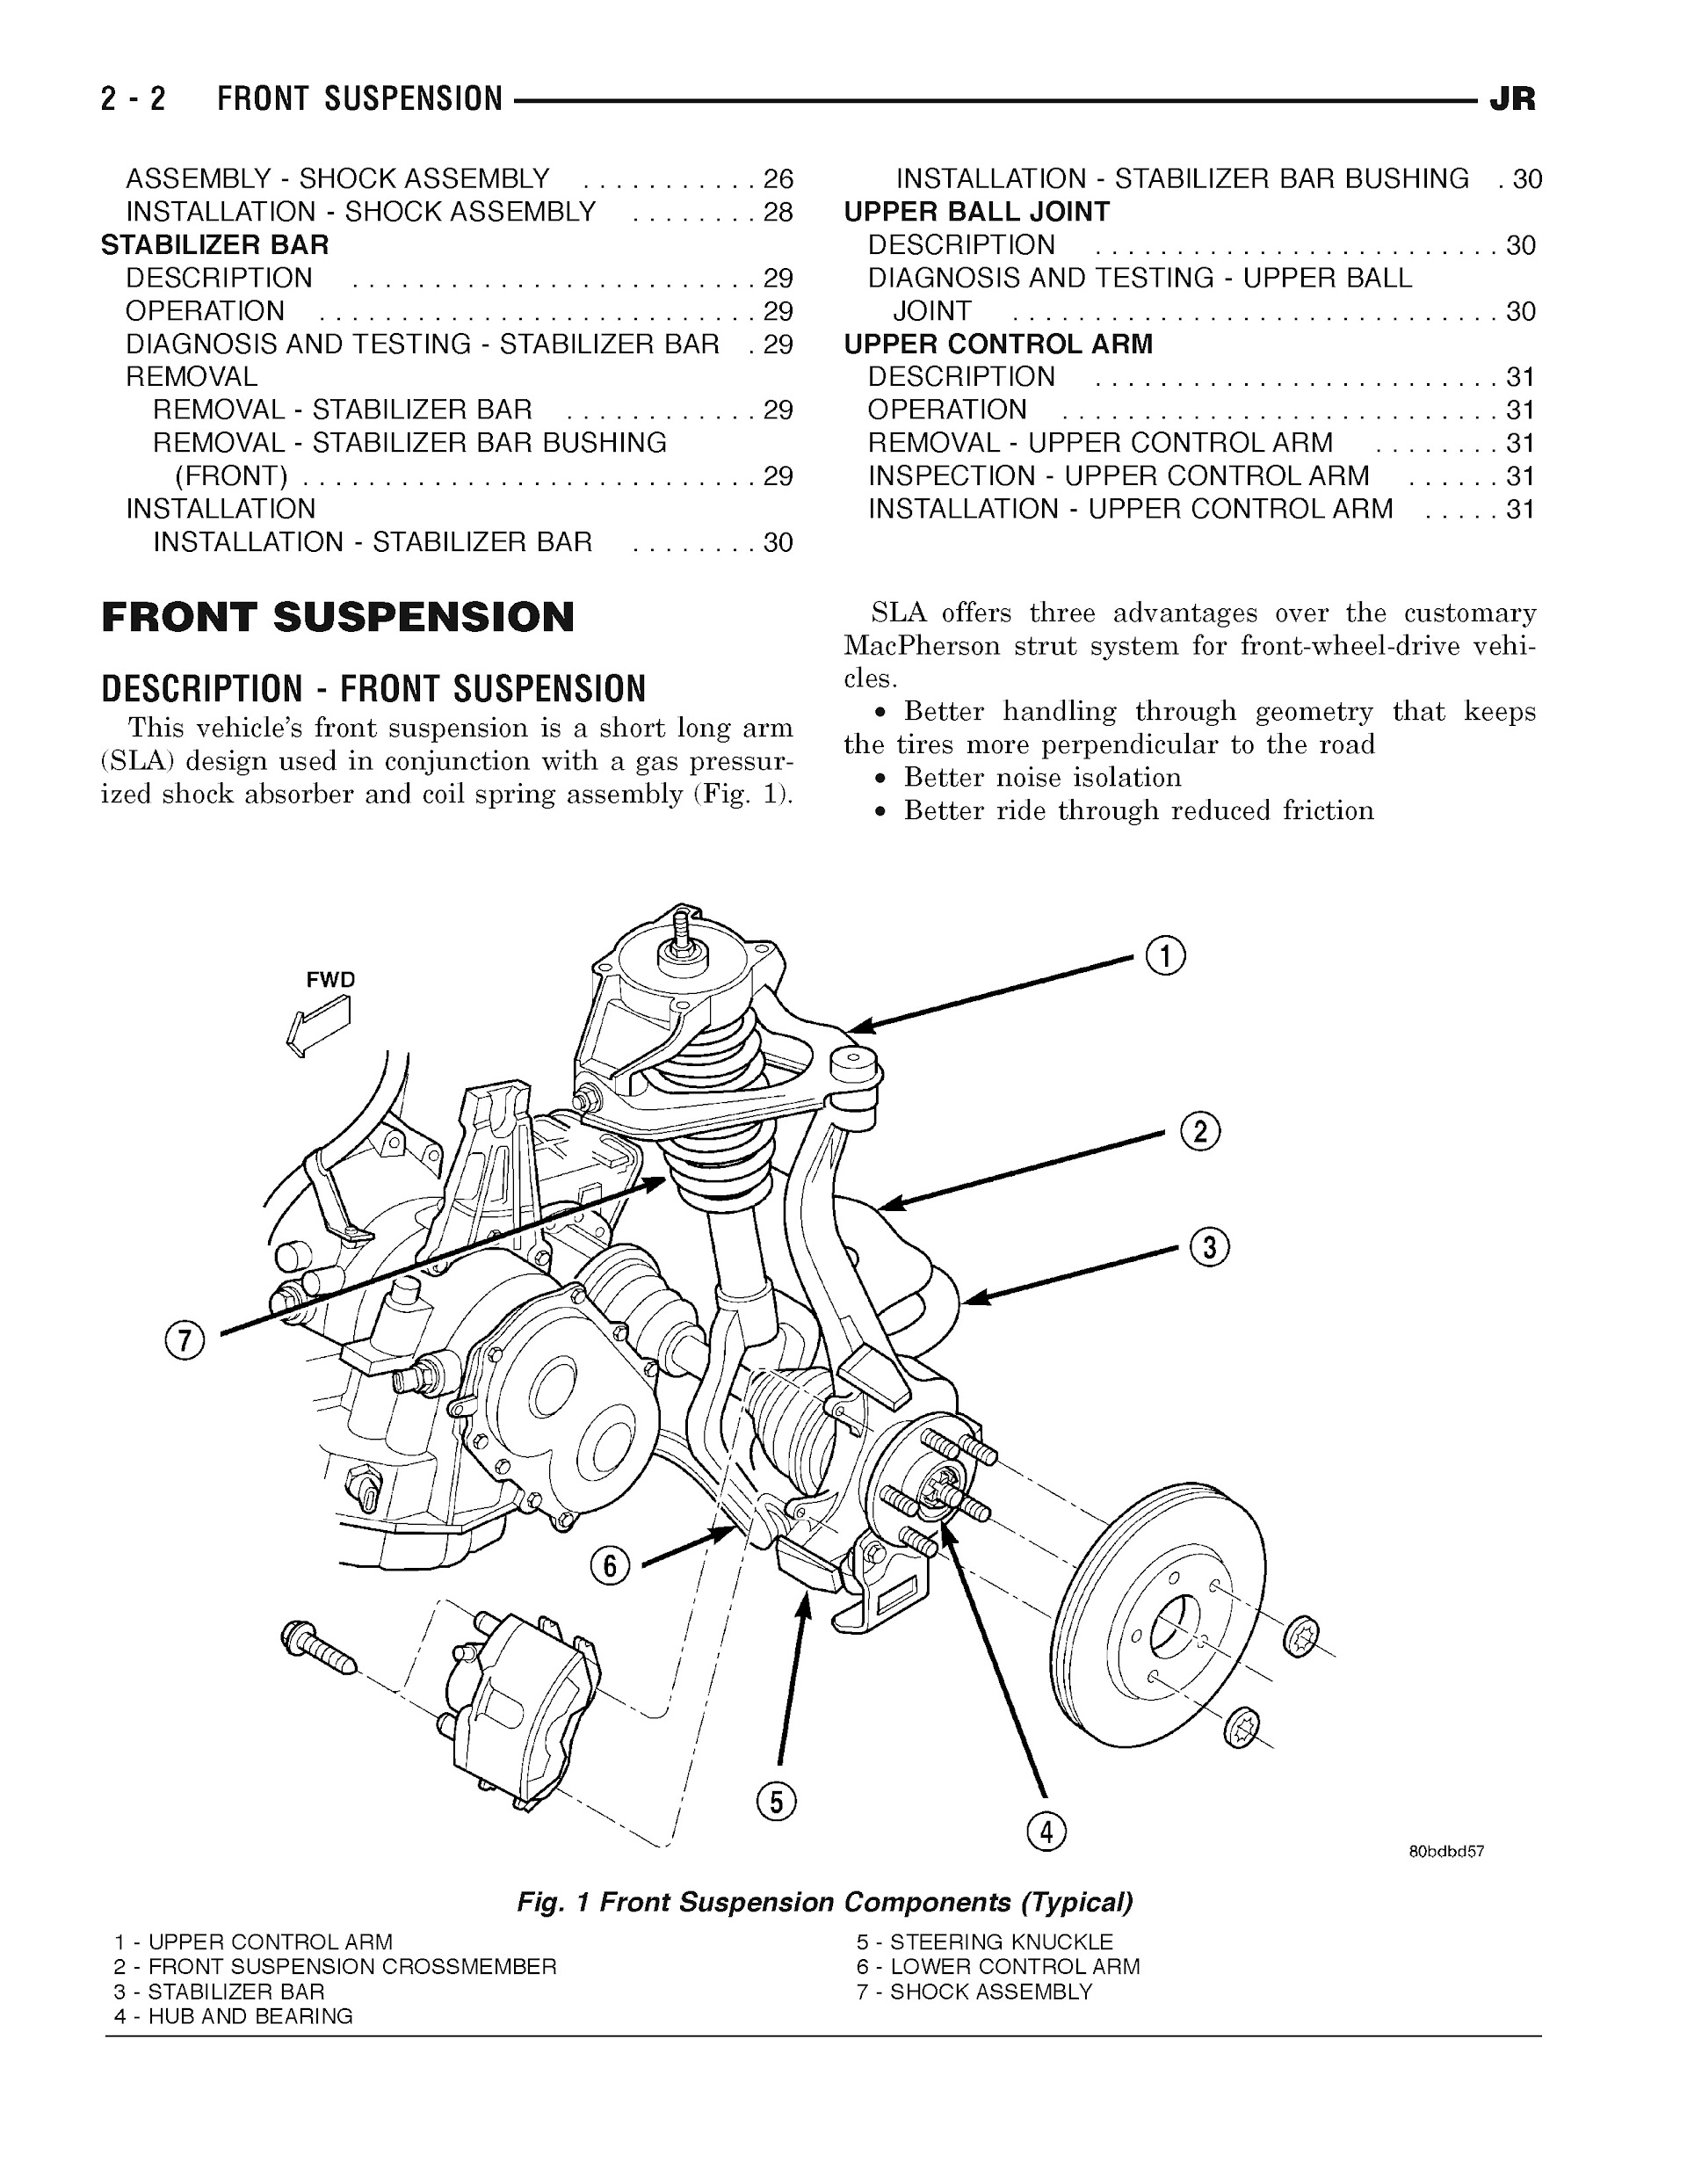 2001-2006 Chrysler Sebring Repair Manual, Front Suspension